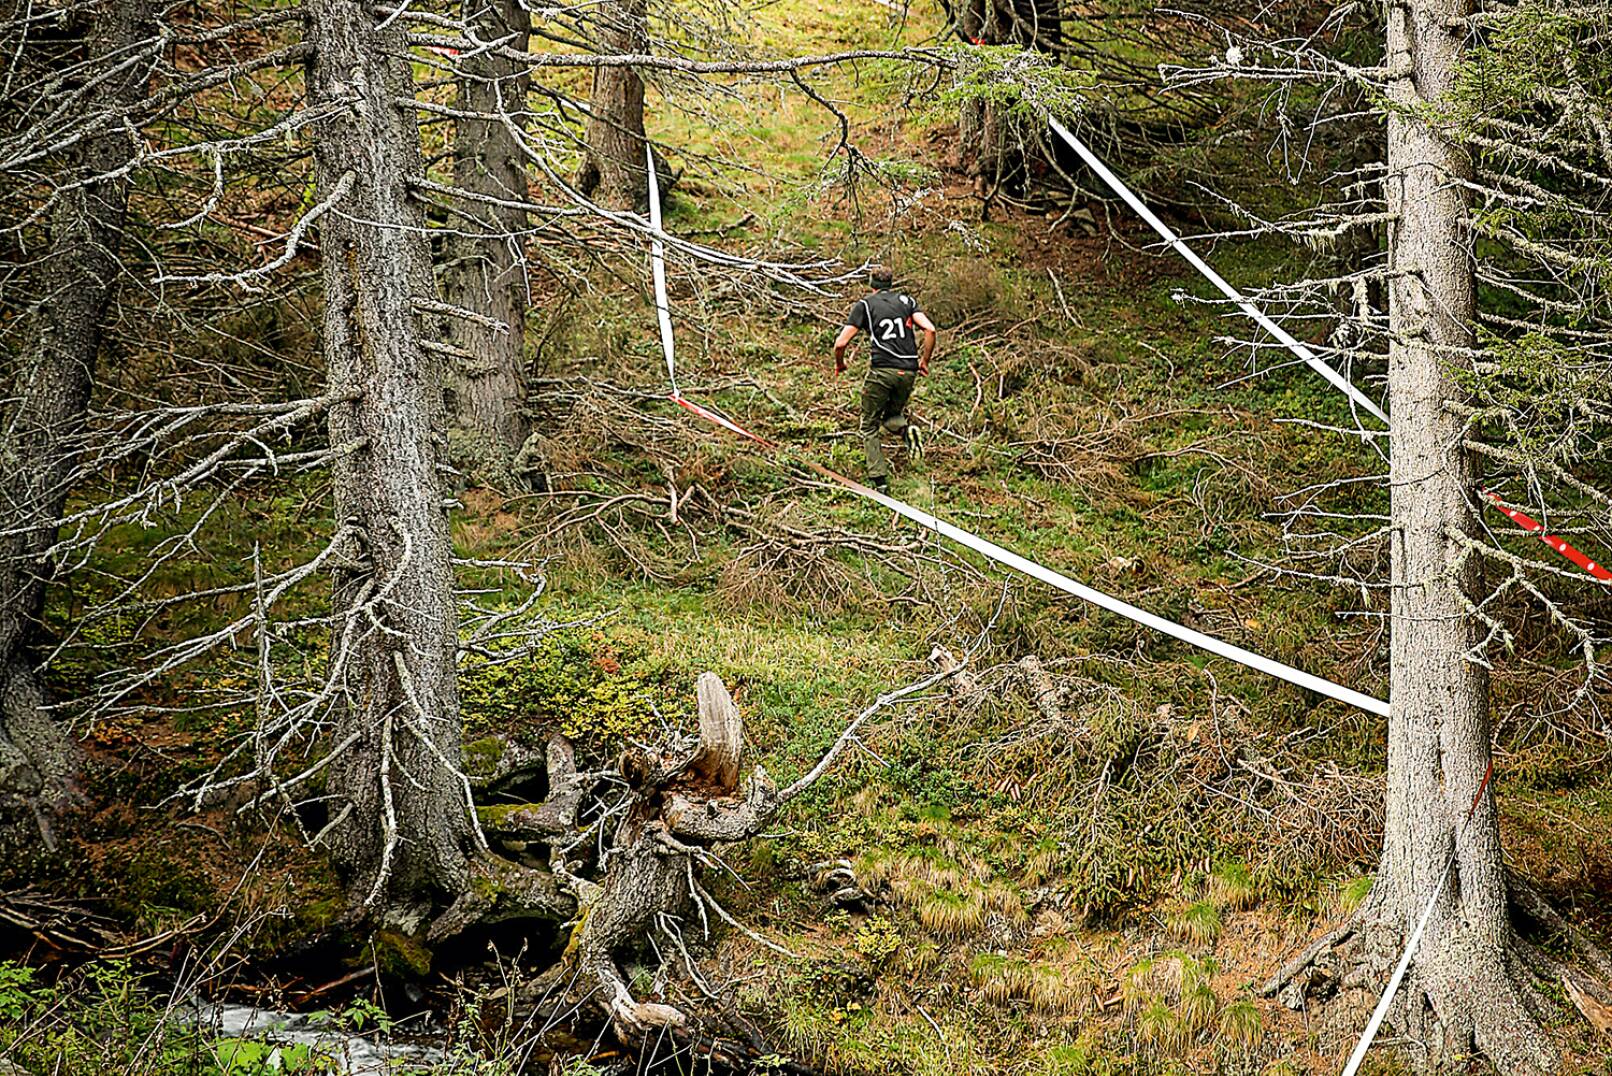 Bergauf, bergab, durch den Wald - abwechslungsreich präsentierte sich die zu absolvierende Strecke! - © Peter Rigaud